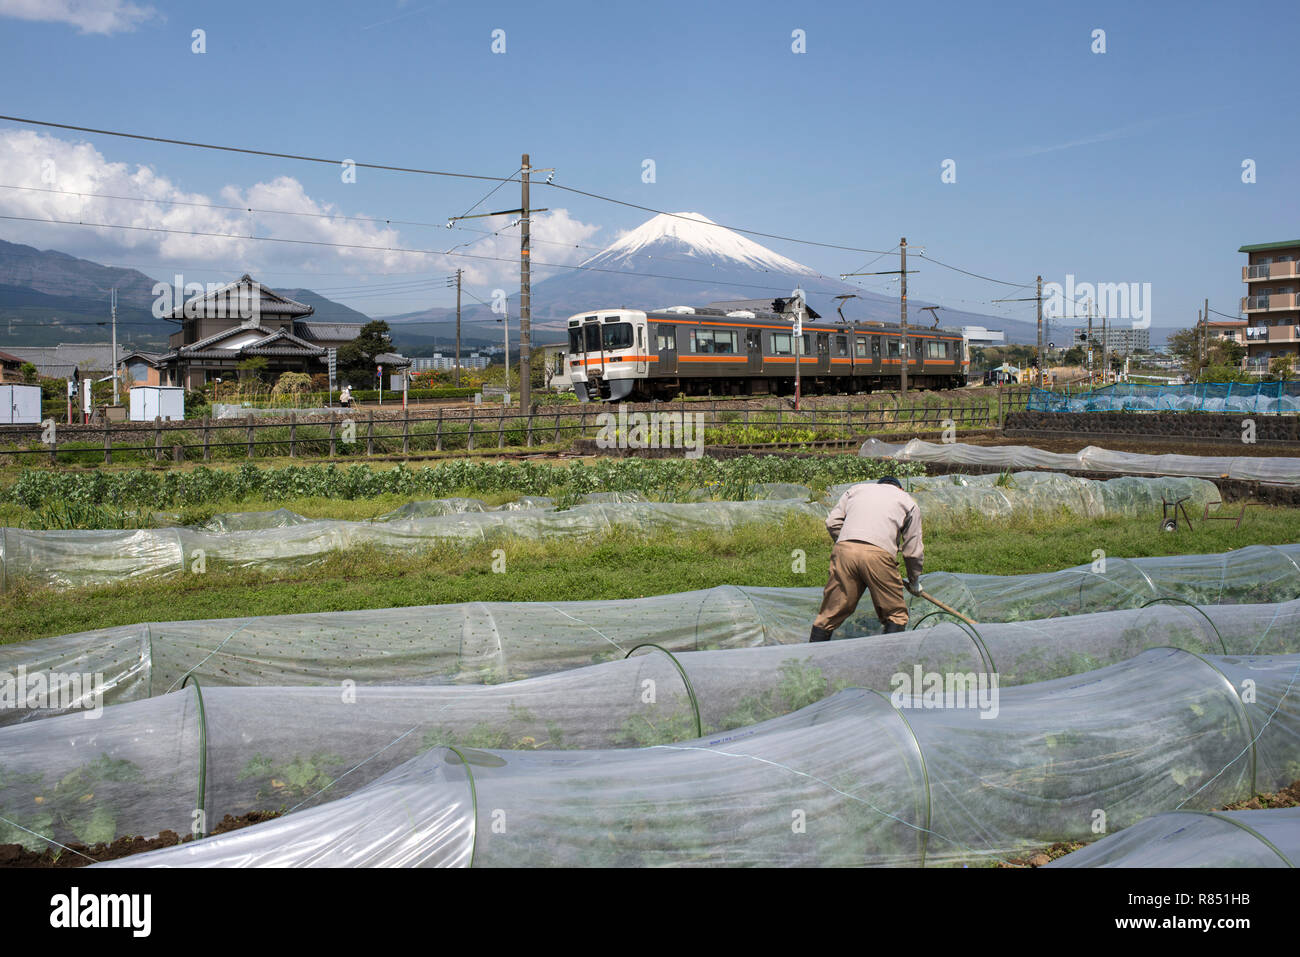 Japan, Insel Honshu, Susono: Markt Gärtner, Zug und Mount Fuji *** Local Caption *** Stockfoto